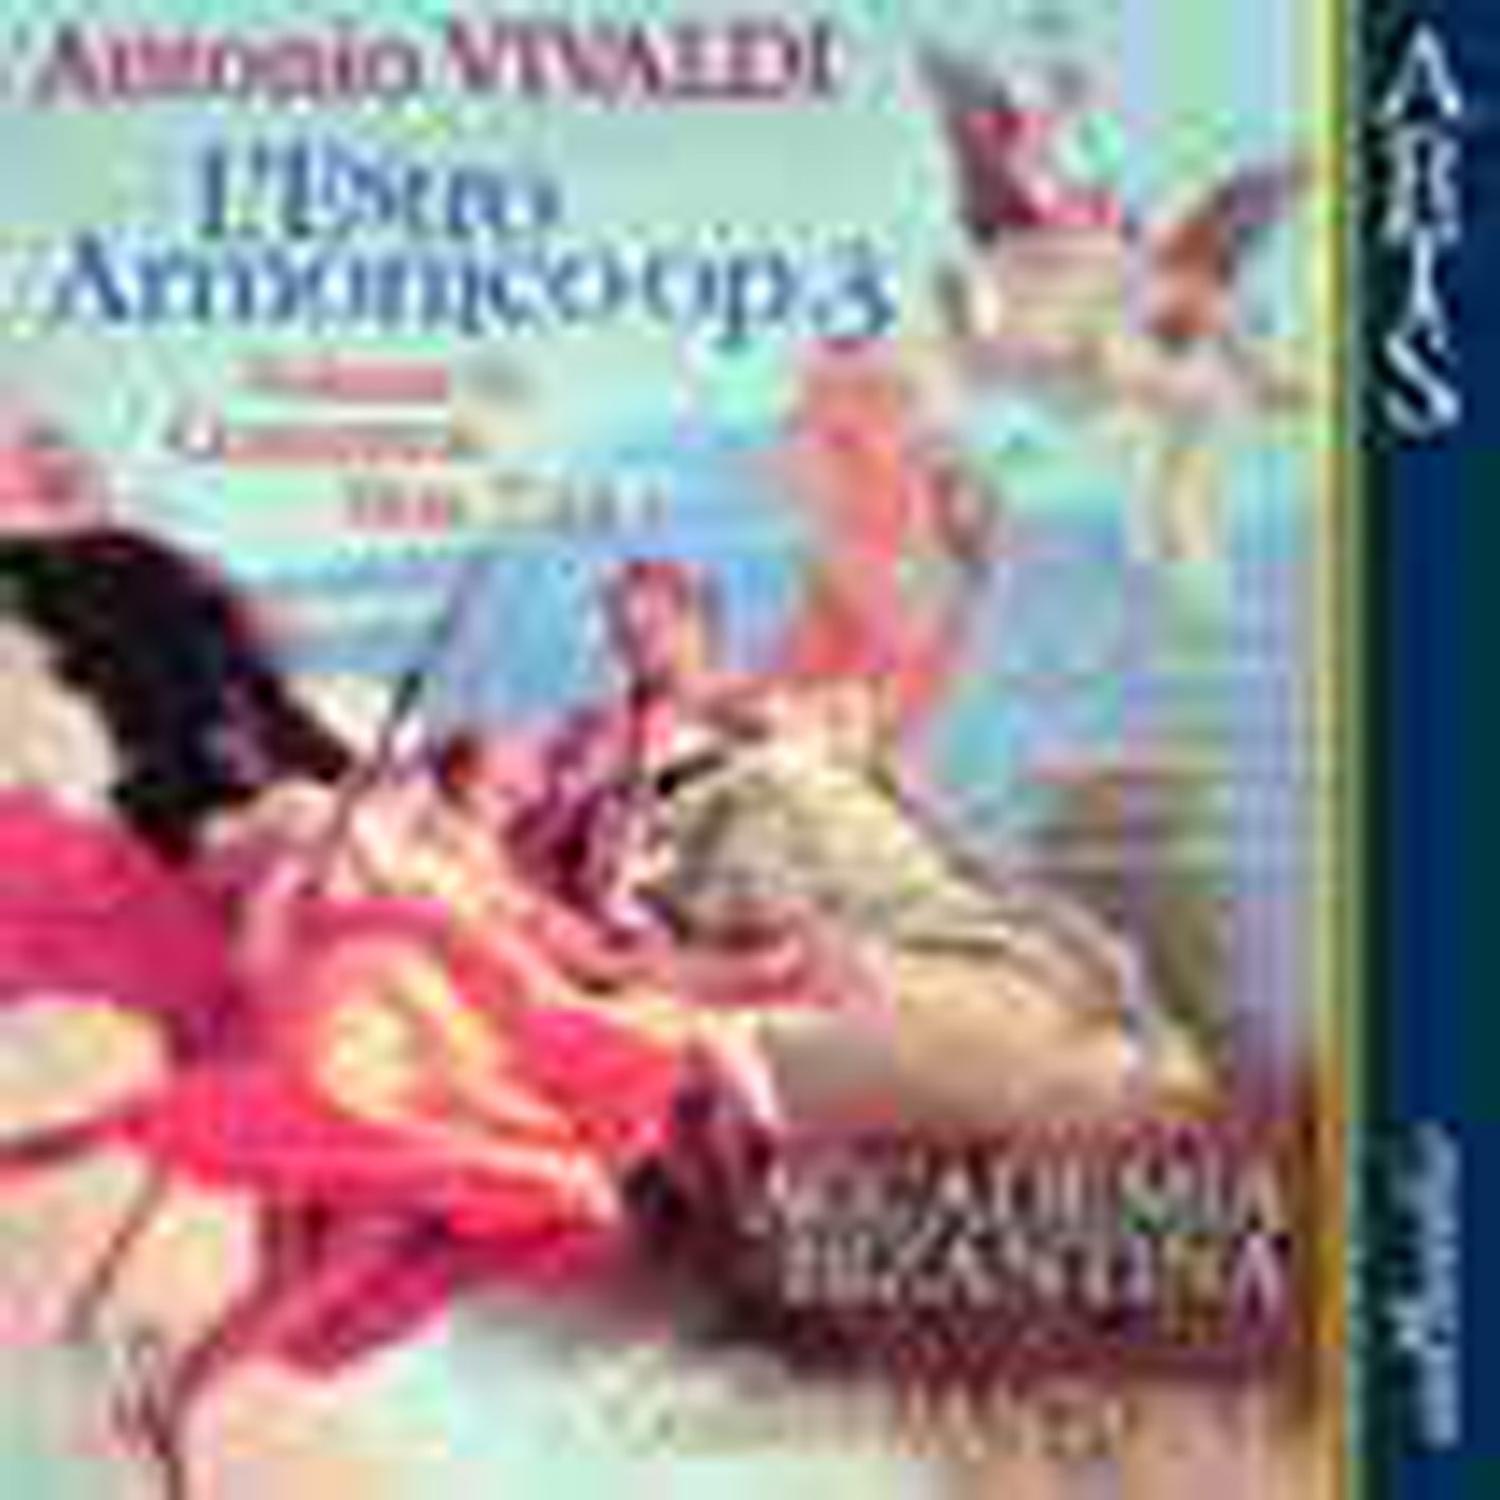 Vivaldi: L'Estro Armonico op. 3, Vol. 2: Concertos Nos. 7-12